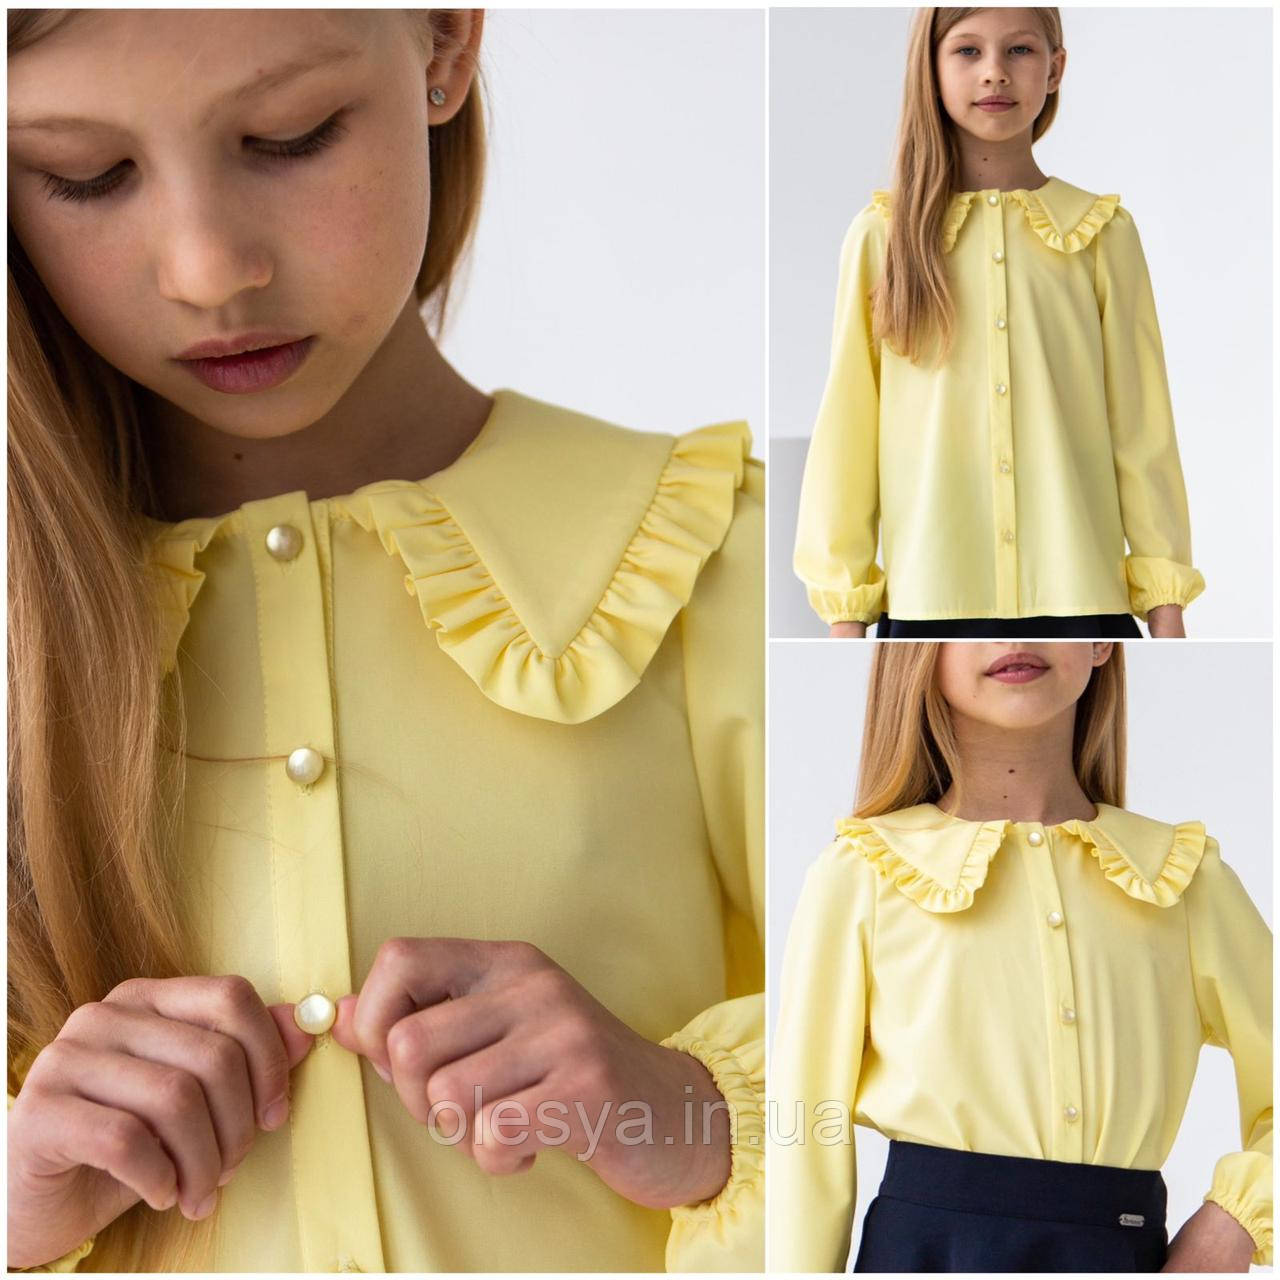 Блузка школьная нарядная для девочек Petrа тм BrilliAnt Размеры 116- 134